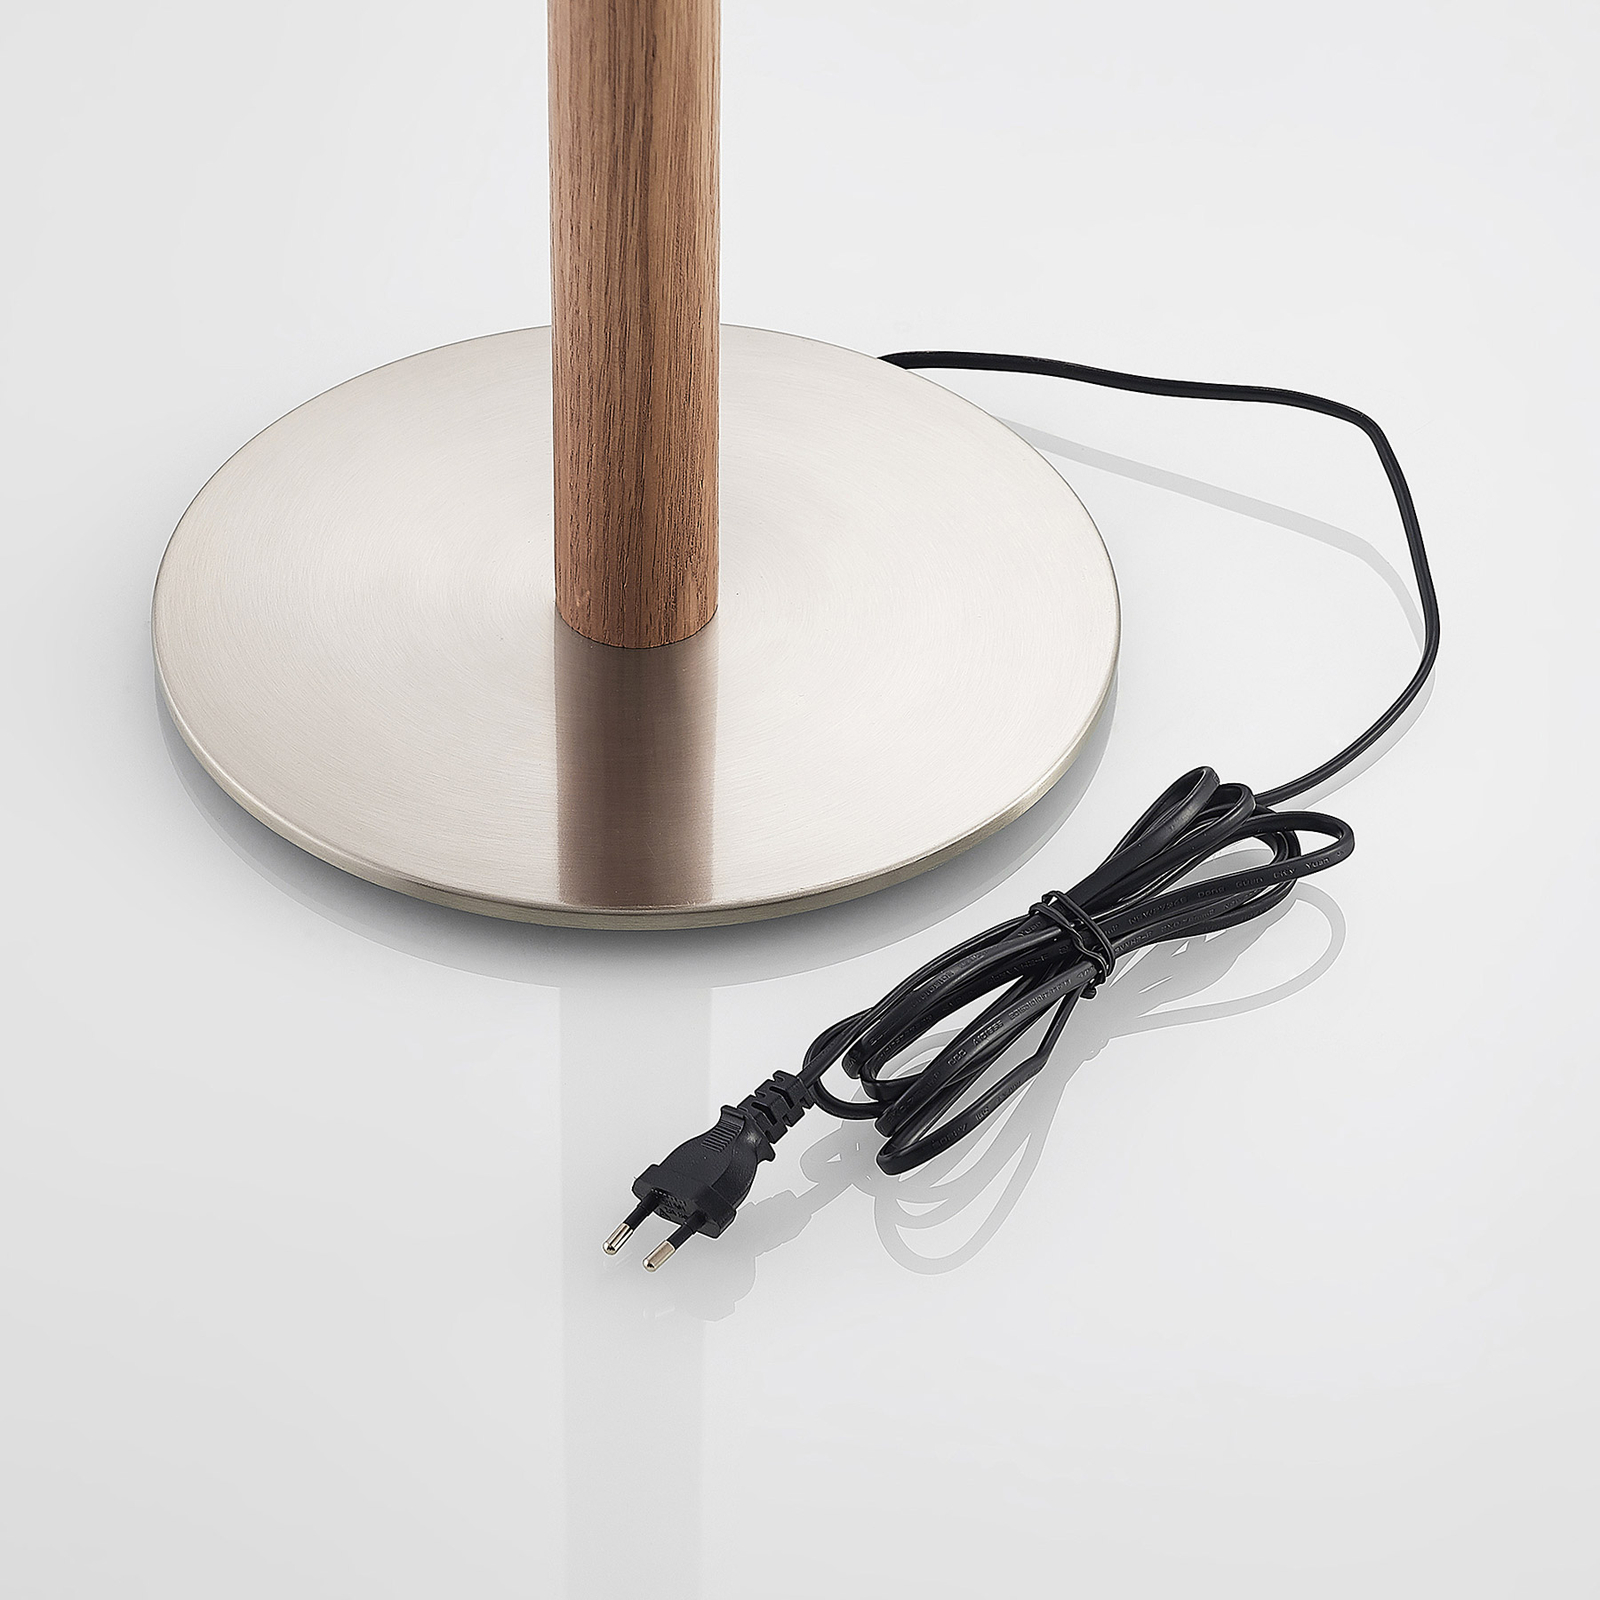 Lucande Heily lampa stojąca, cylinder, 35cm, biała